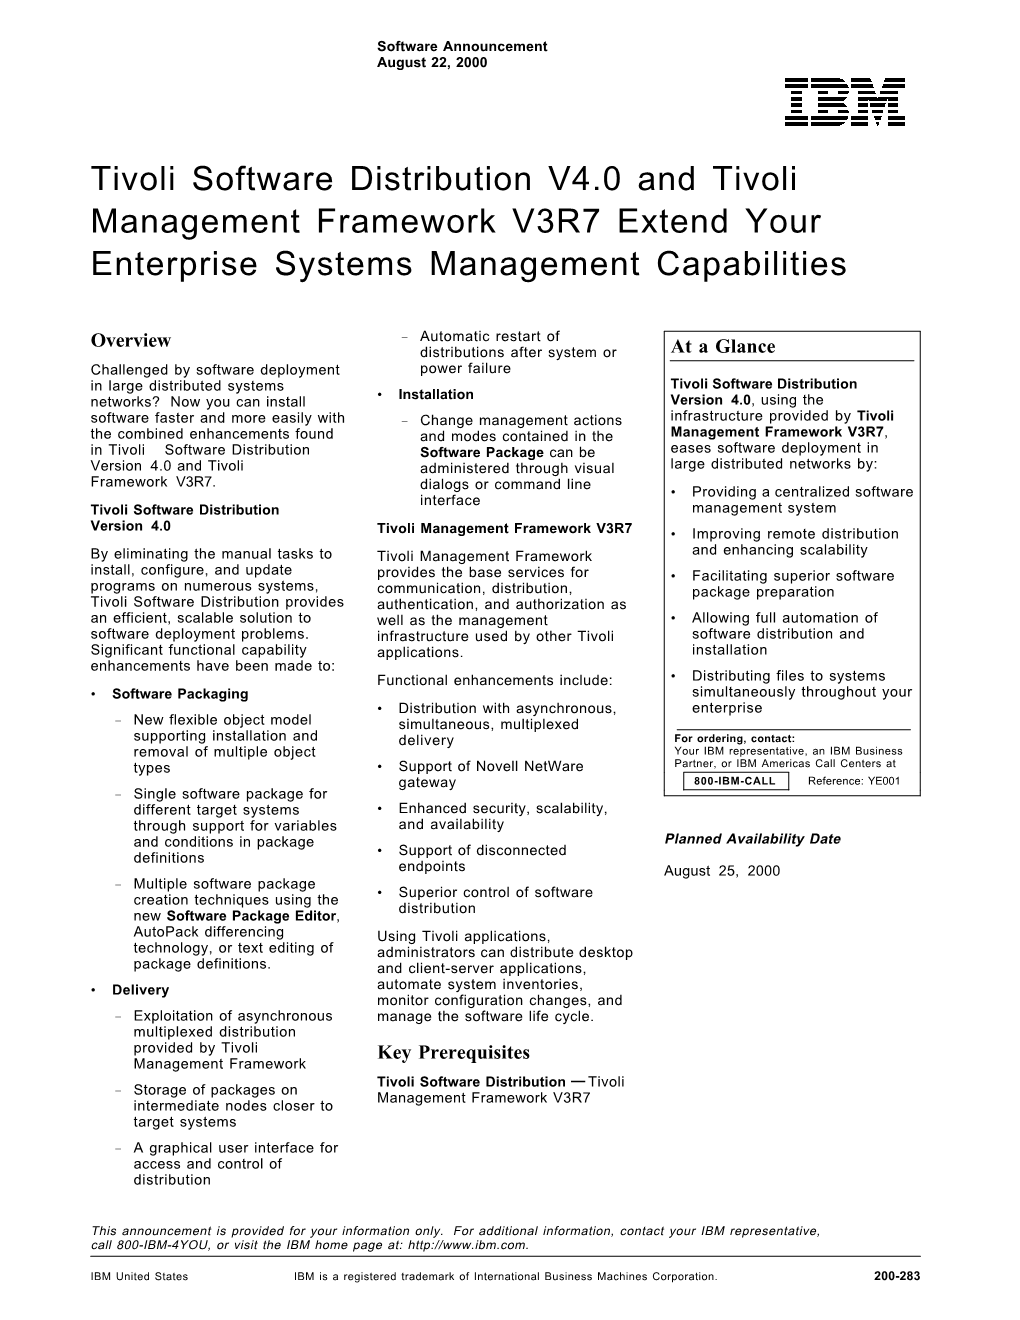 Tivoli Software Distribution V4.0 and Tivoli Management Framework V3R7 Extend Your Enterprise Systems Management Capabilities